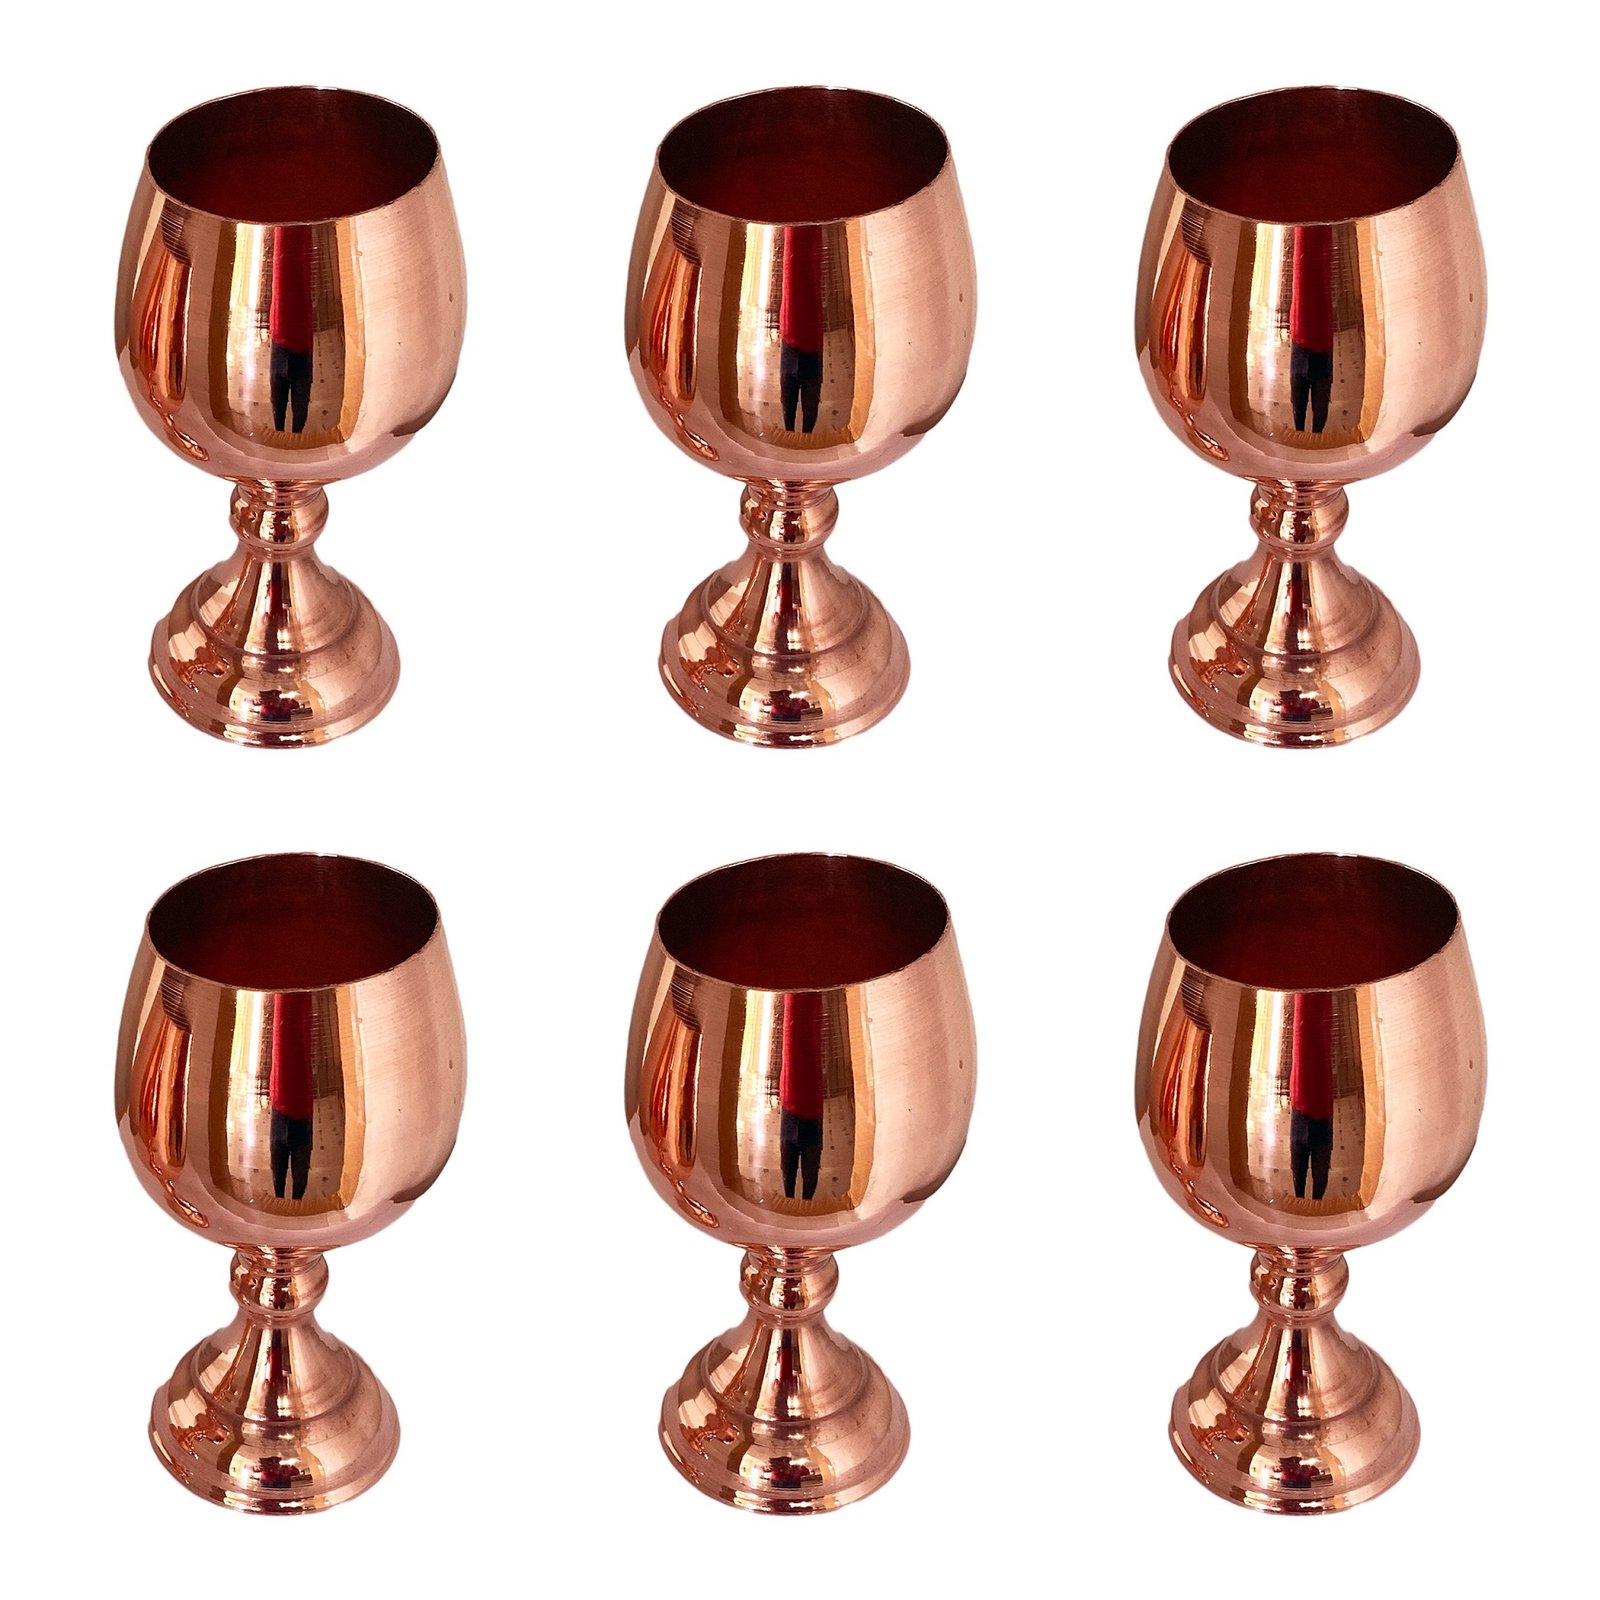 Handicraft Copper cup model NT-56 set 6 pcs,copper,copper metal,copper persian,persian handicrafts copper